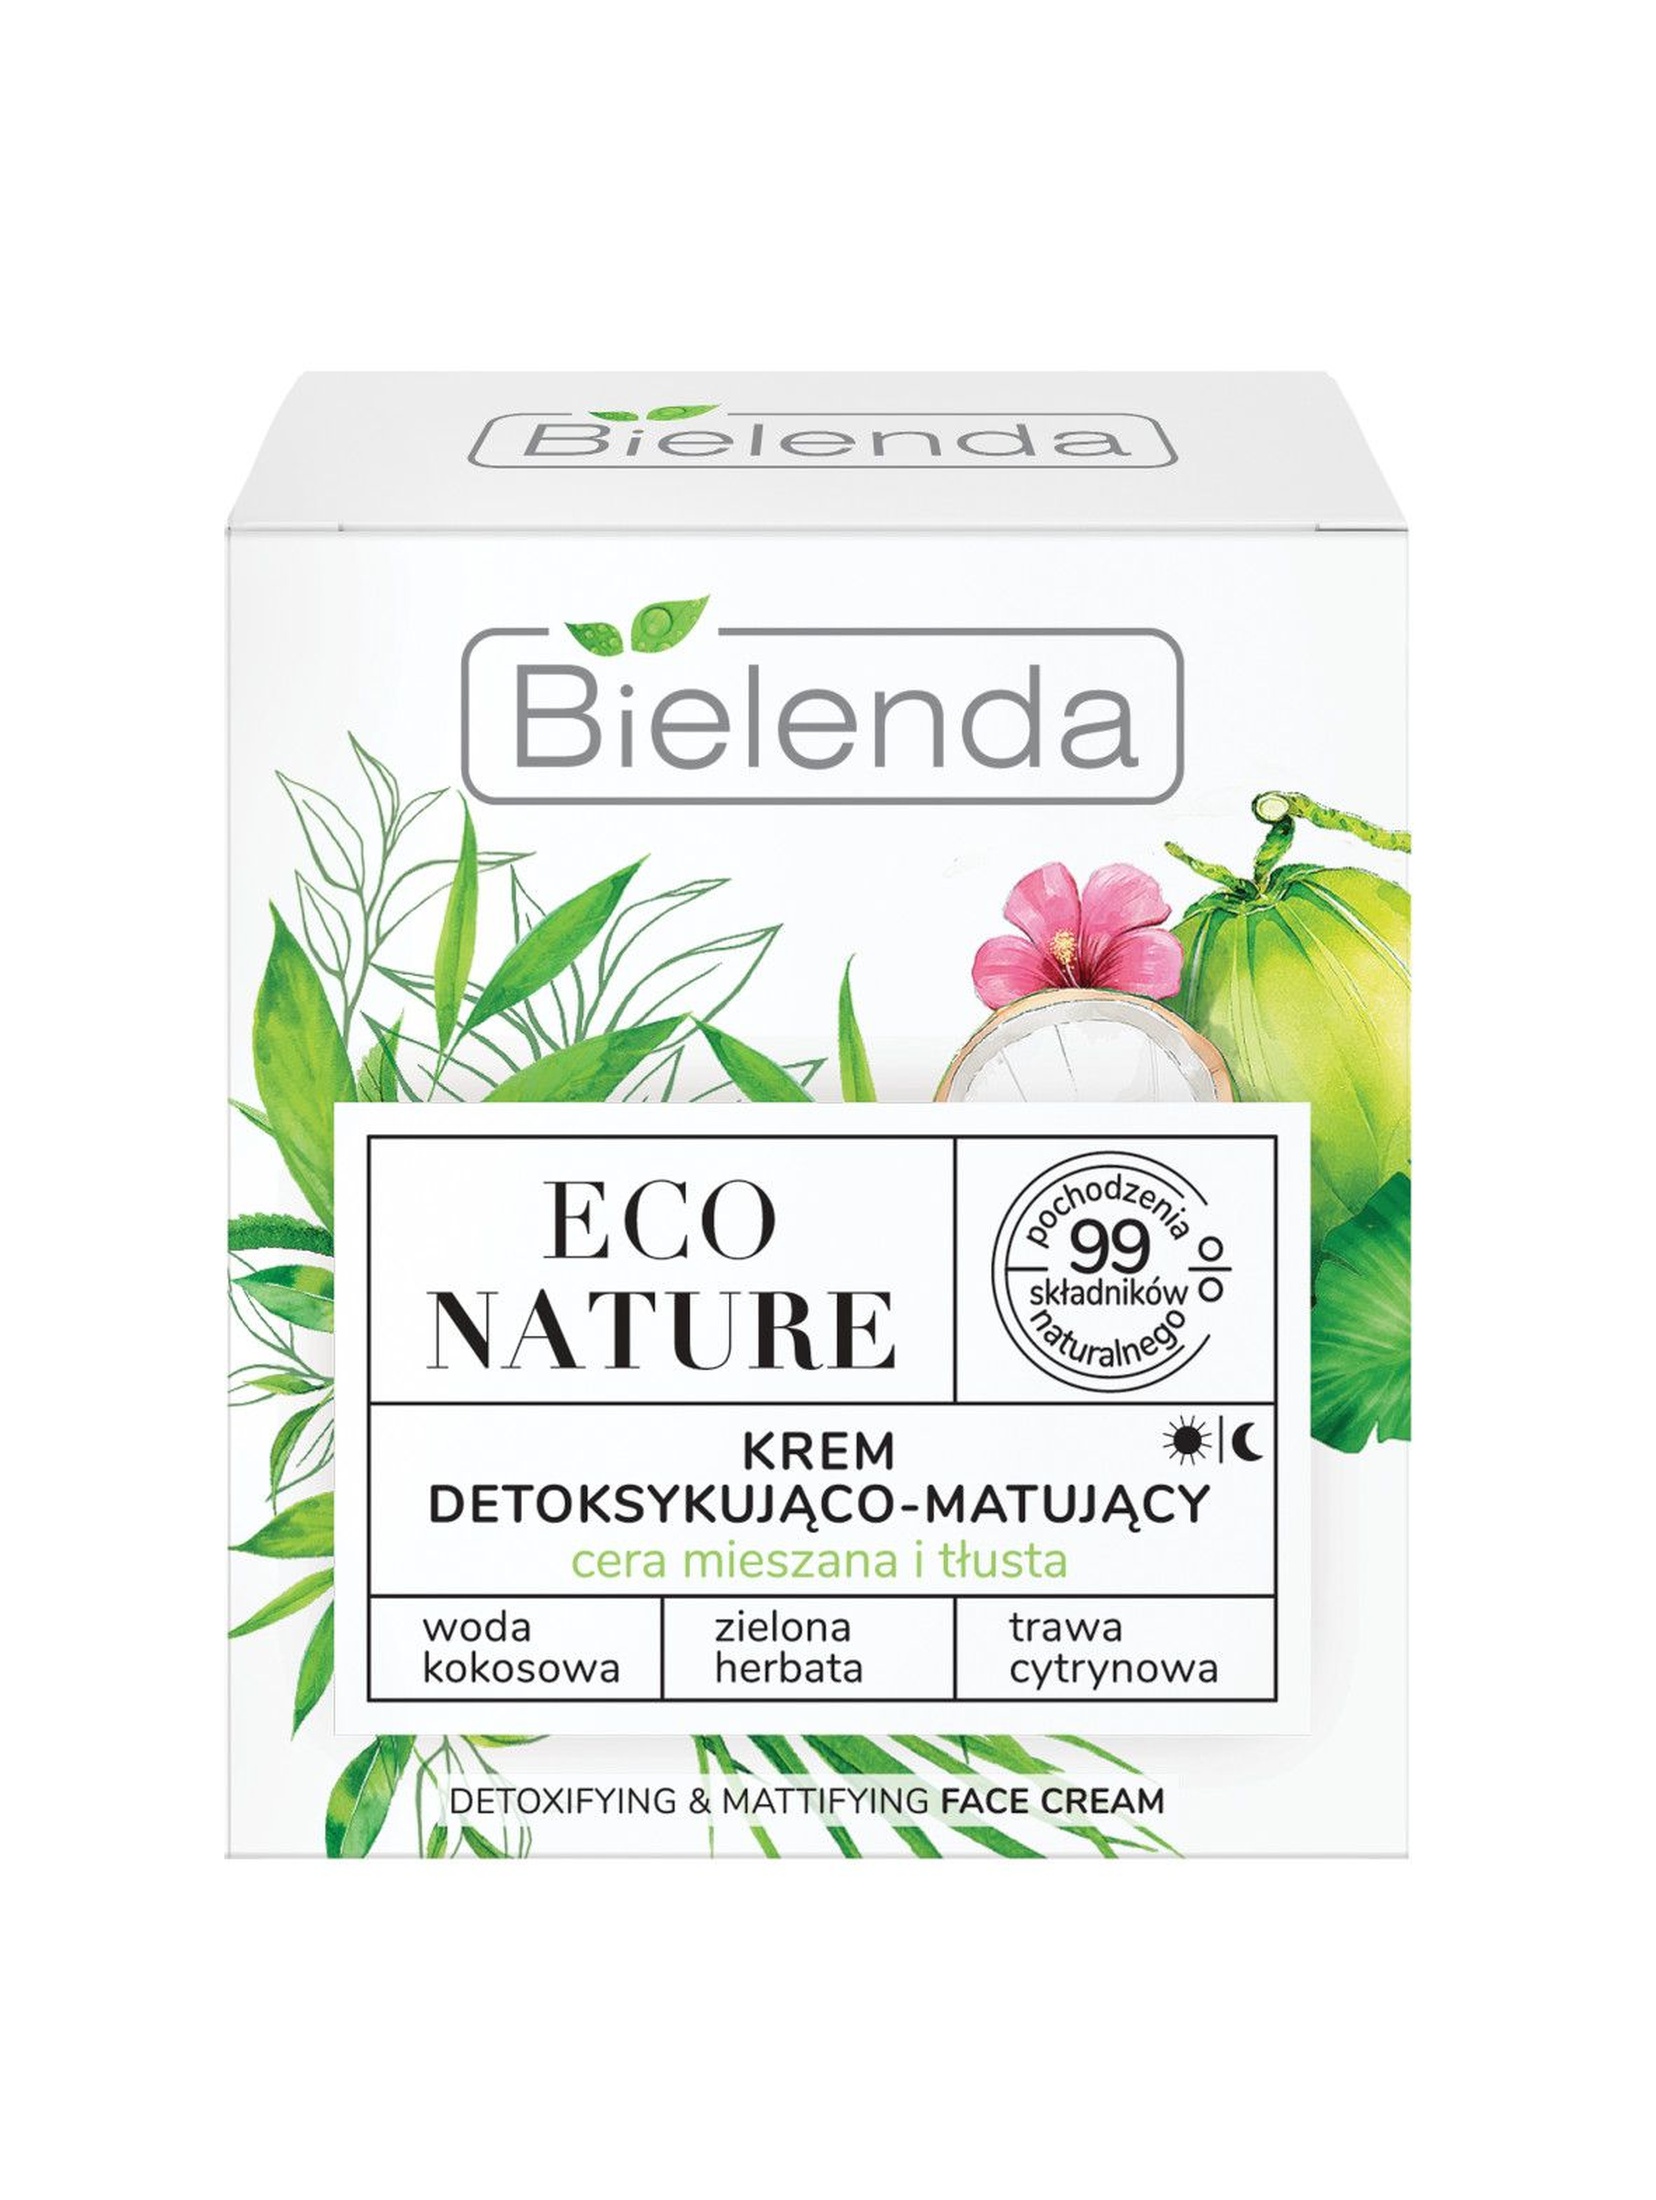 ECO NATURE - Woda kokosowa + Zielona Herbata + Trawa Cytrynowa - krem detoksykująco-matujący 50 ml